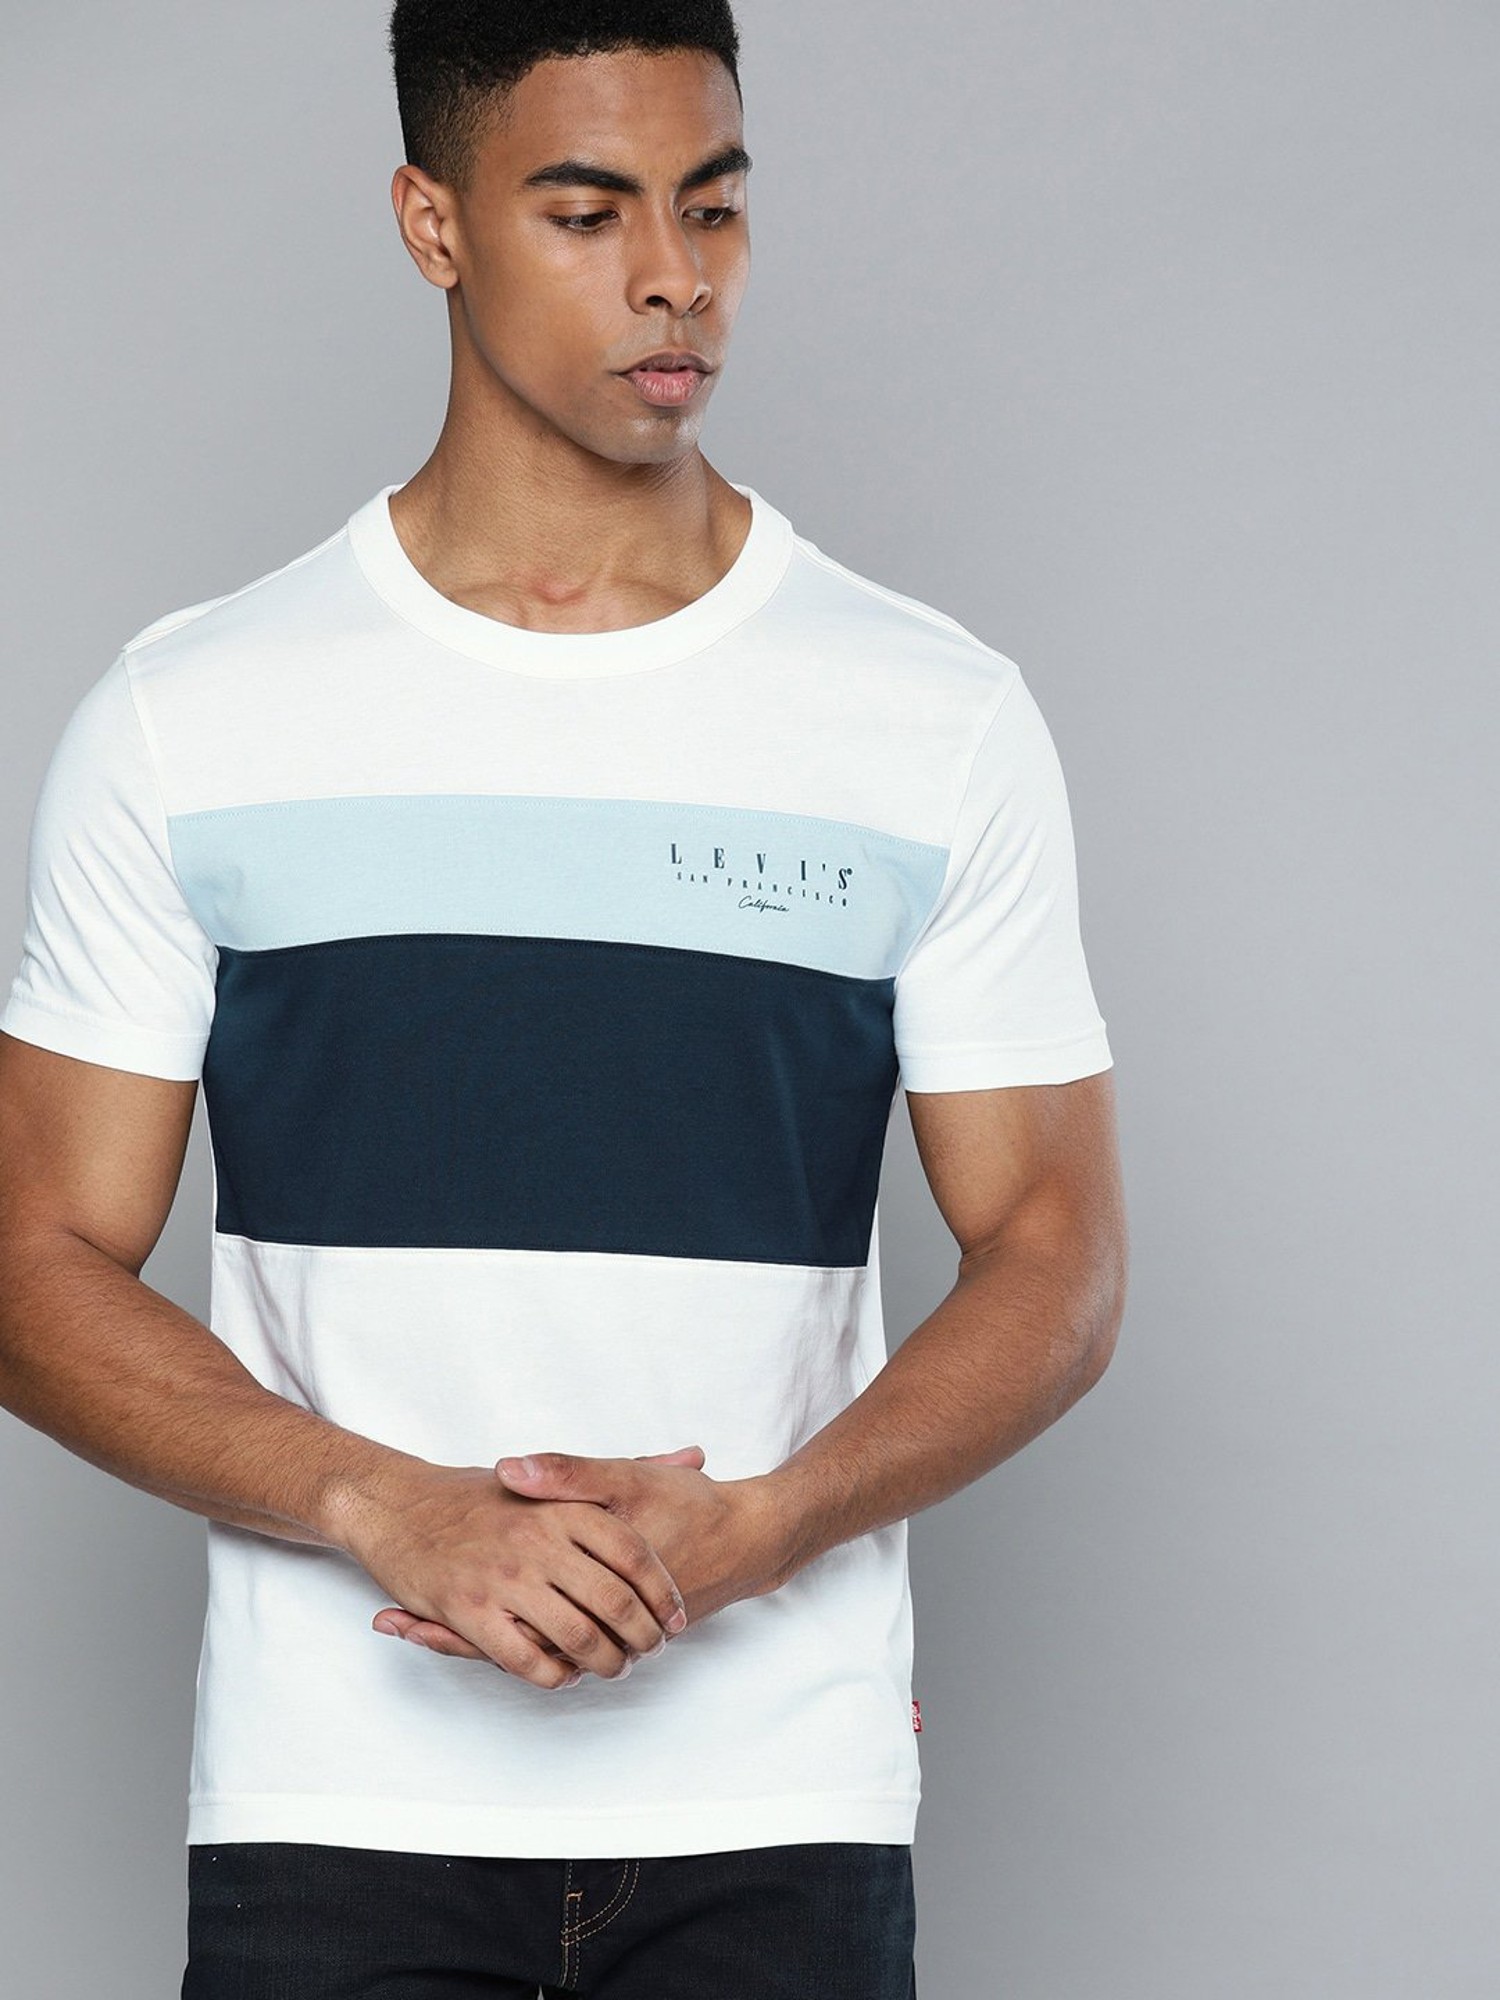 Buy Levi'S White & Navy Cotton T-Shirt for Mens Online @ Tata CLiQ